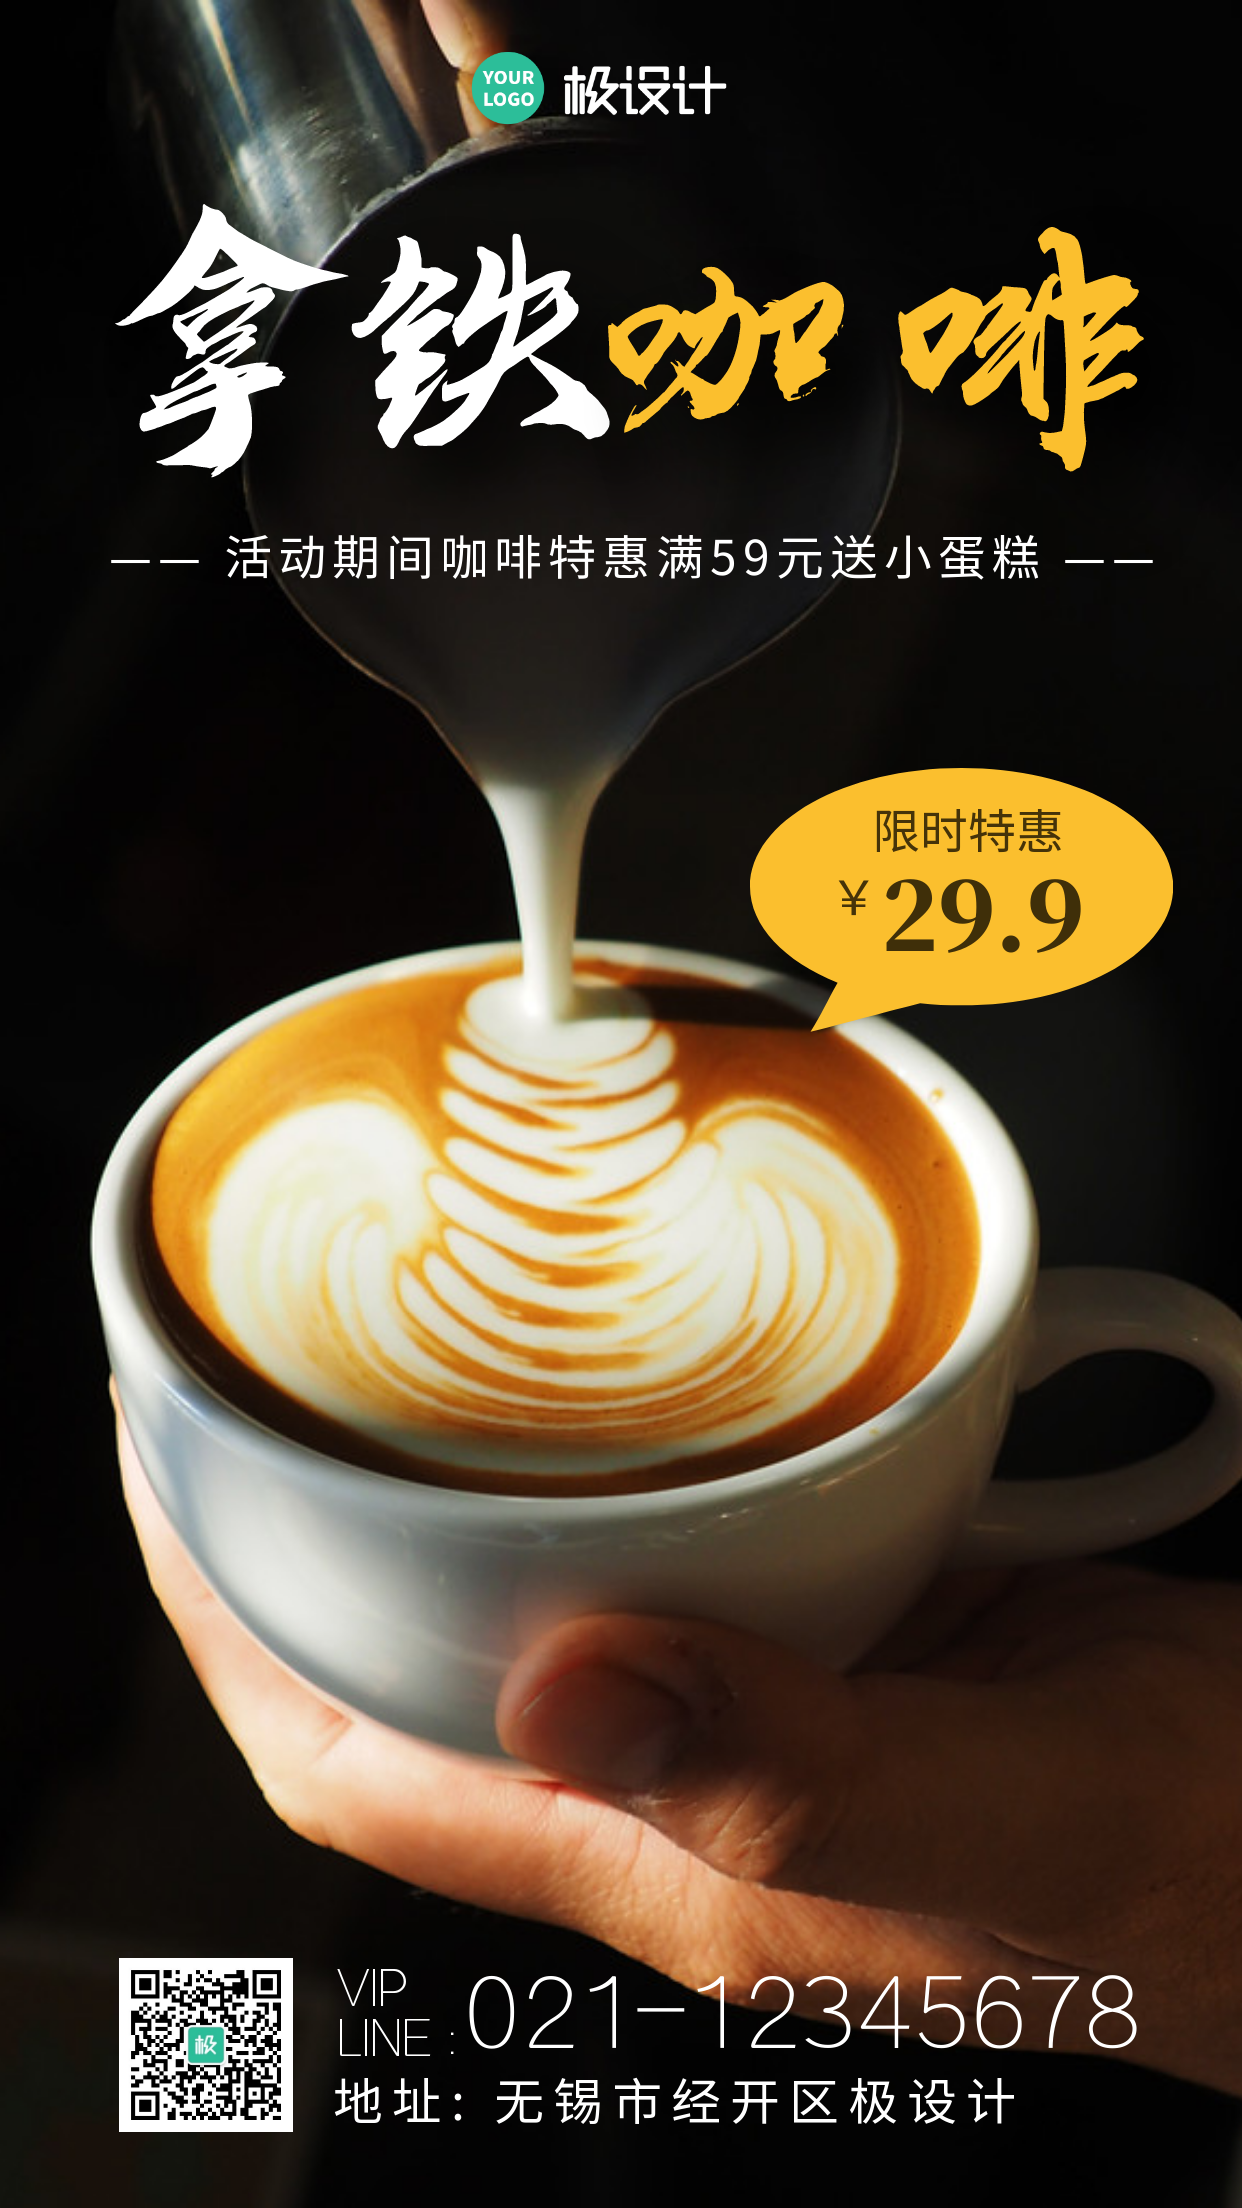 拿铁咖啡实体店产品宣传摄影图海报